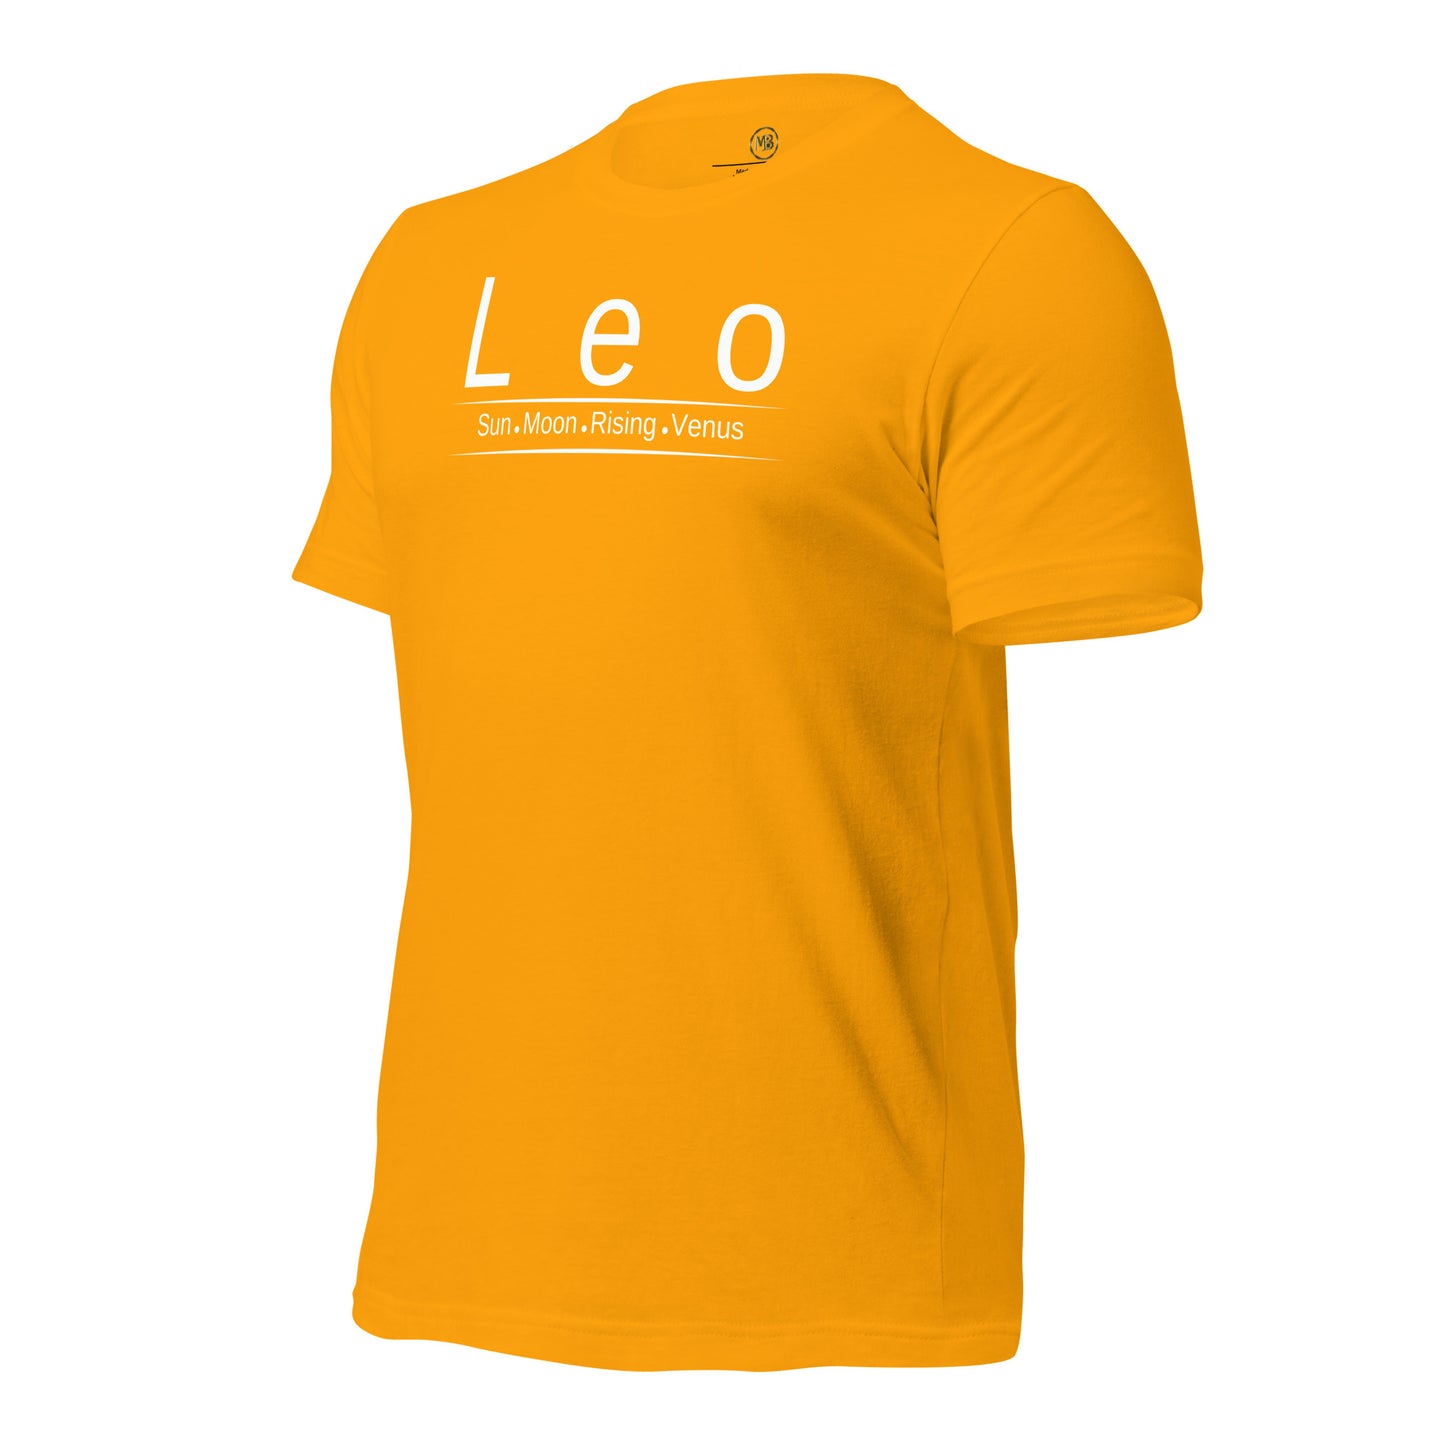 Leo Zodiac Unisex T-Shirt